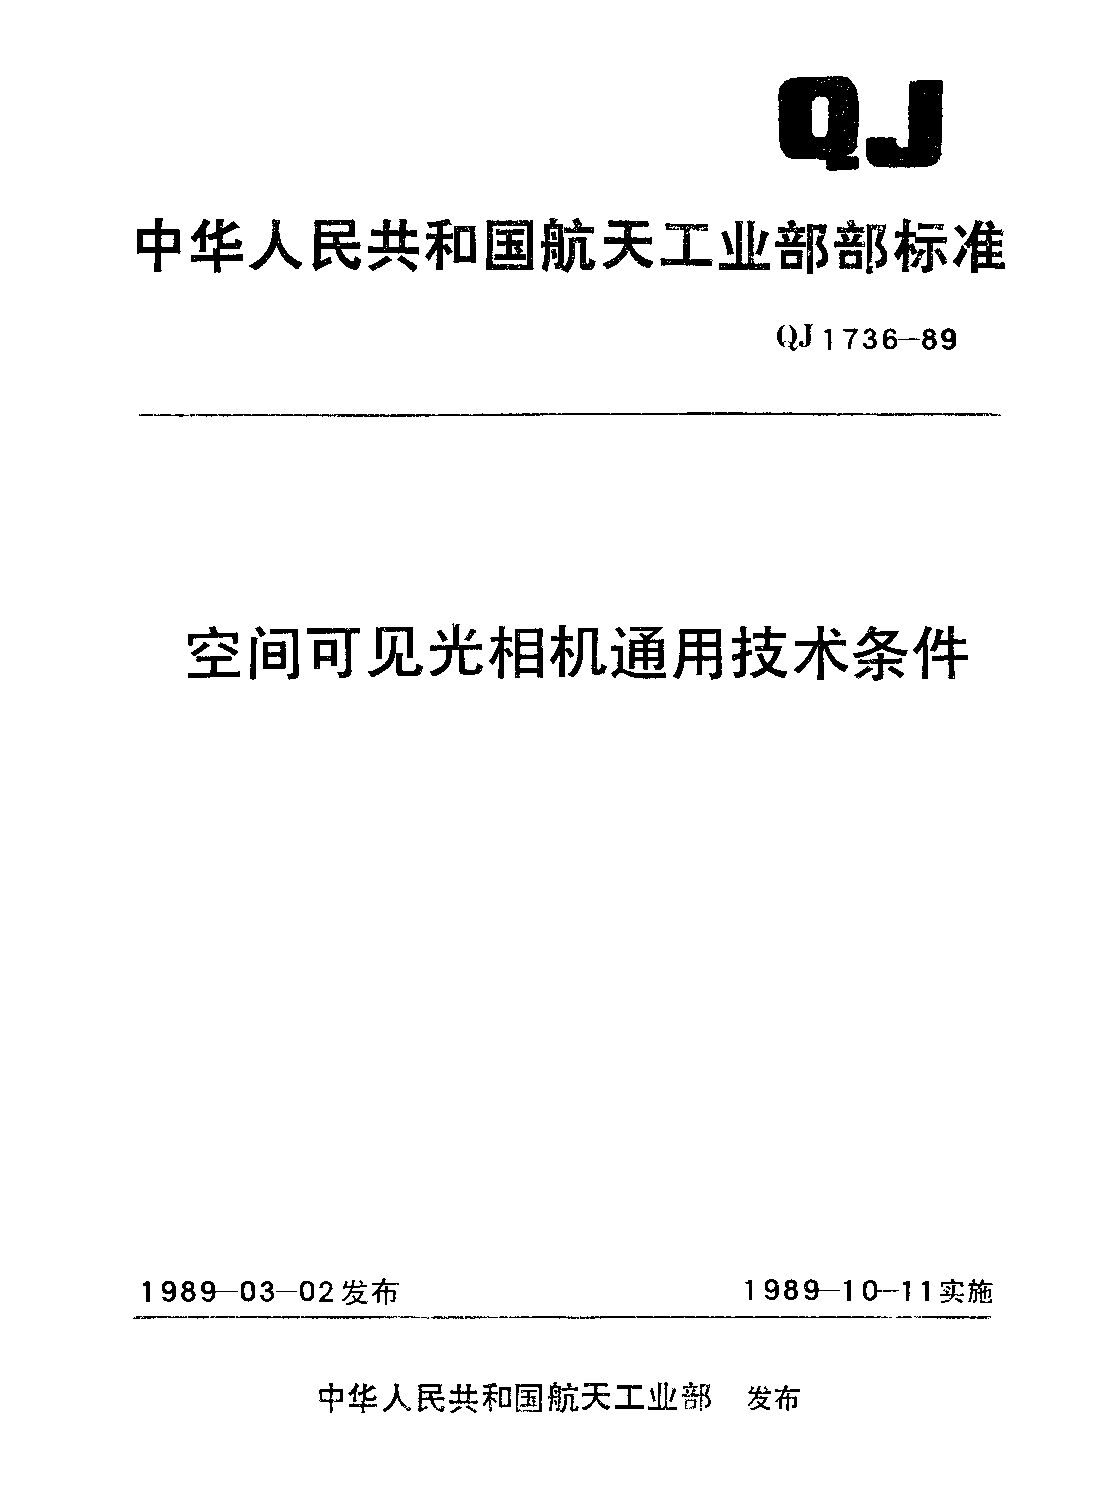 QJ 1736-1989封面图